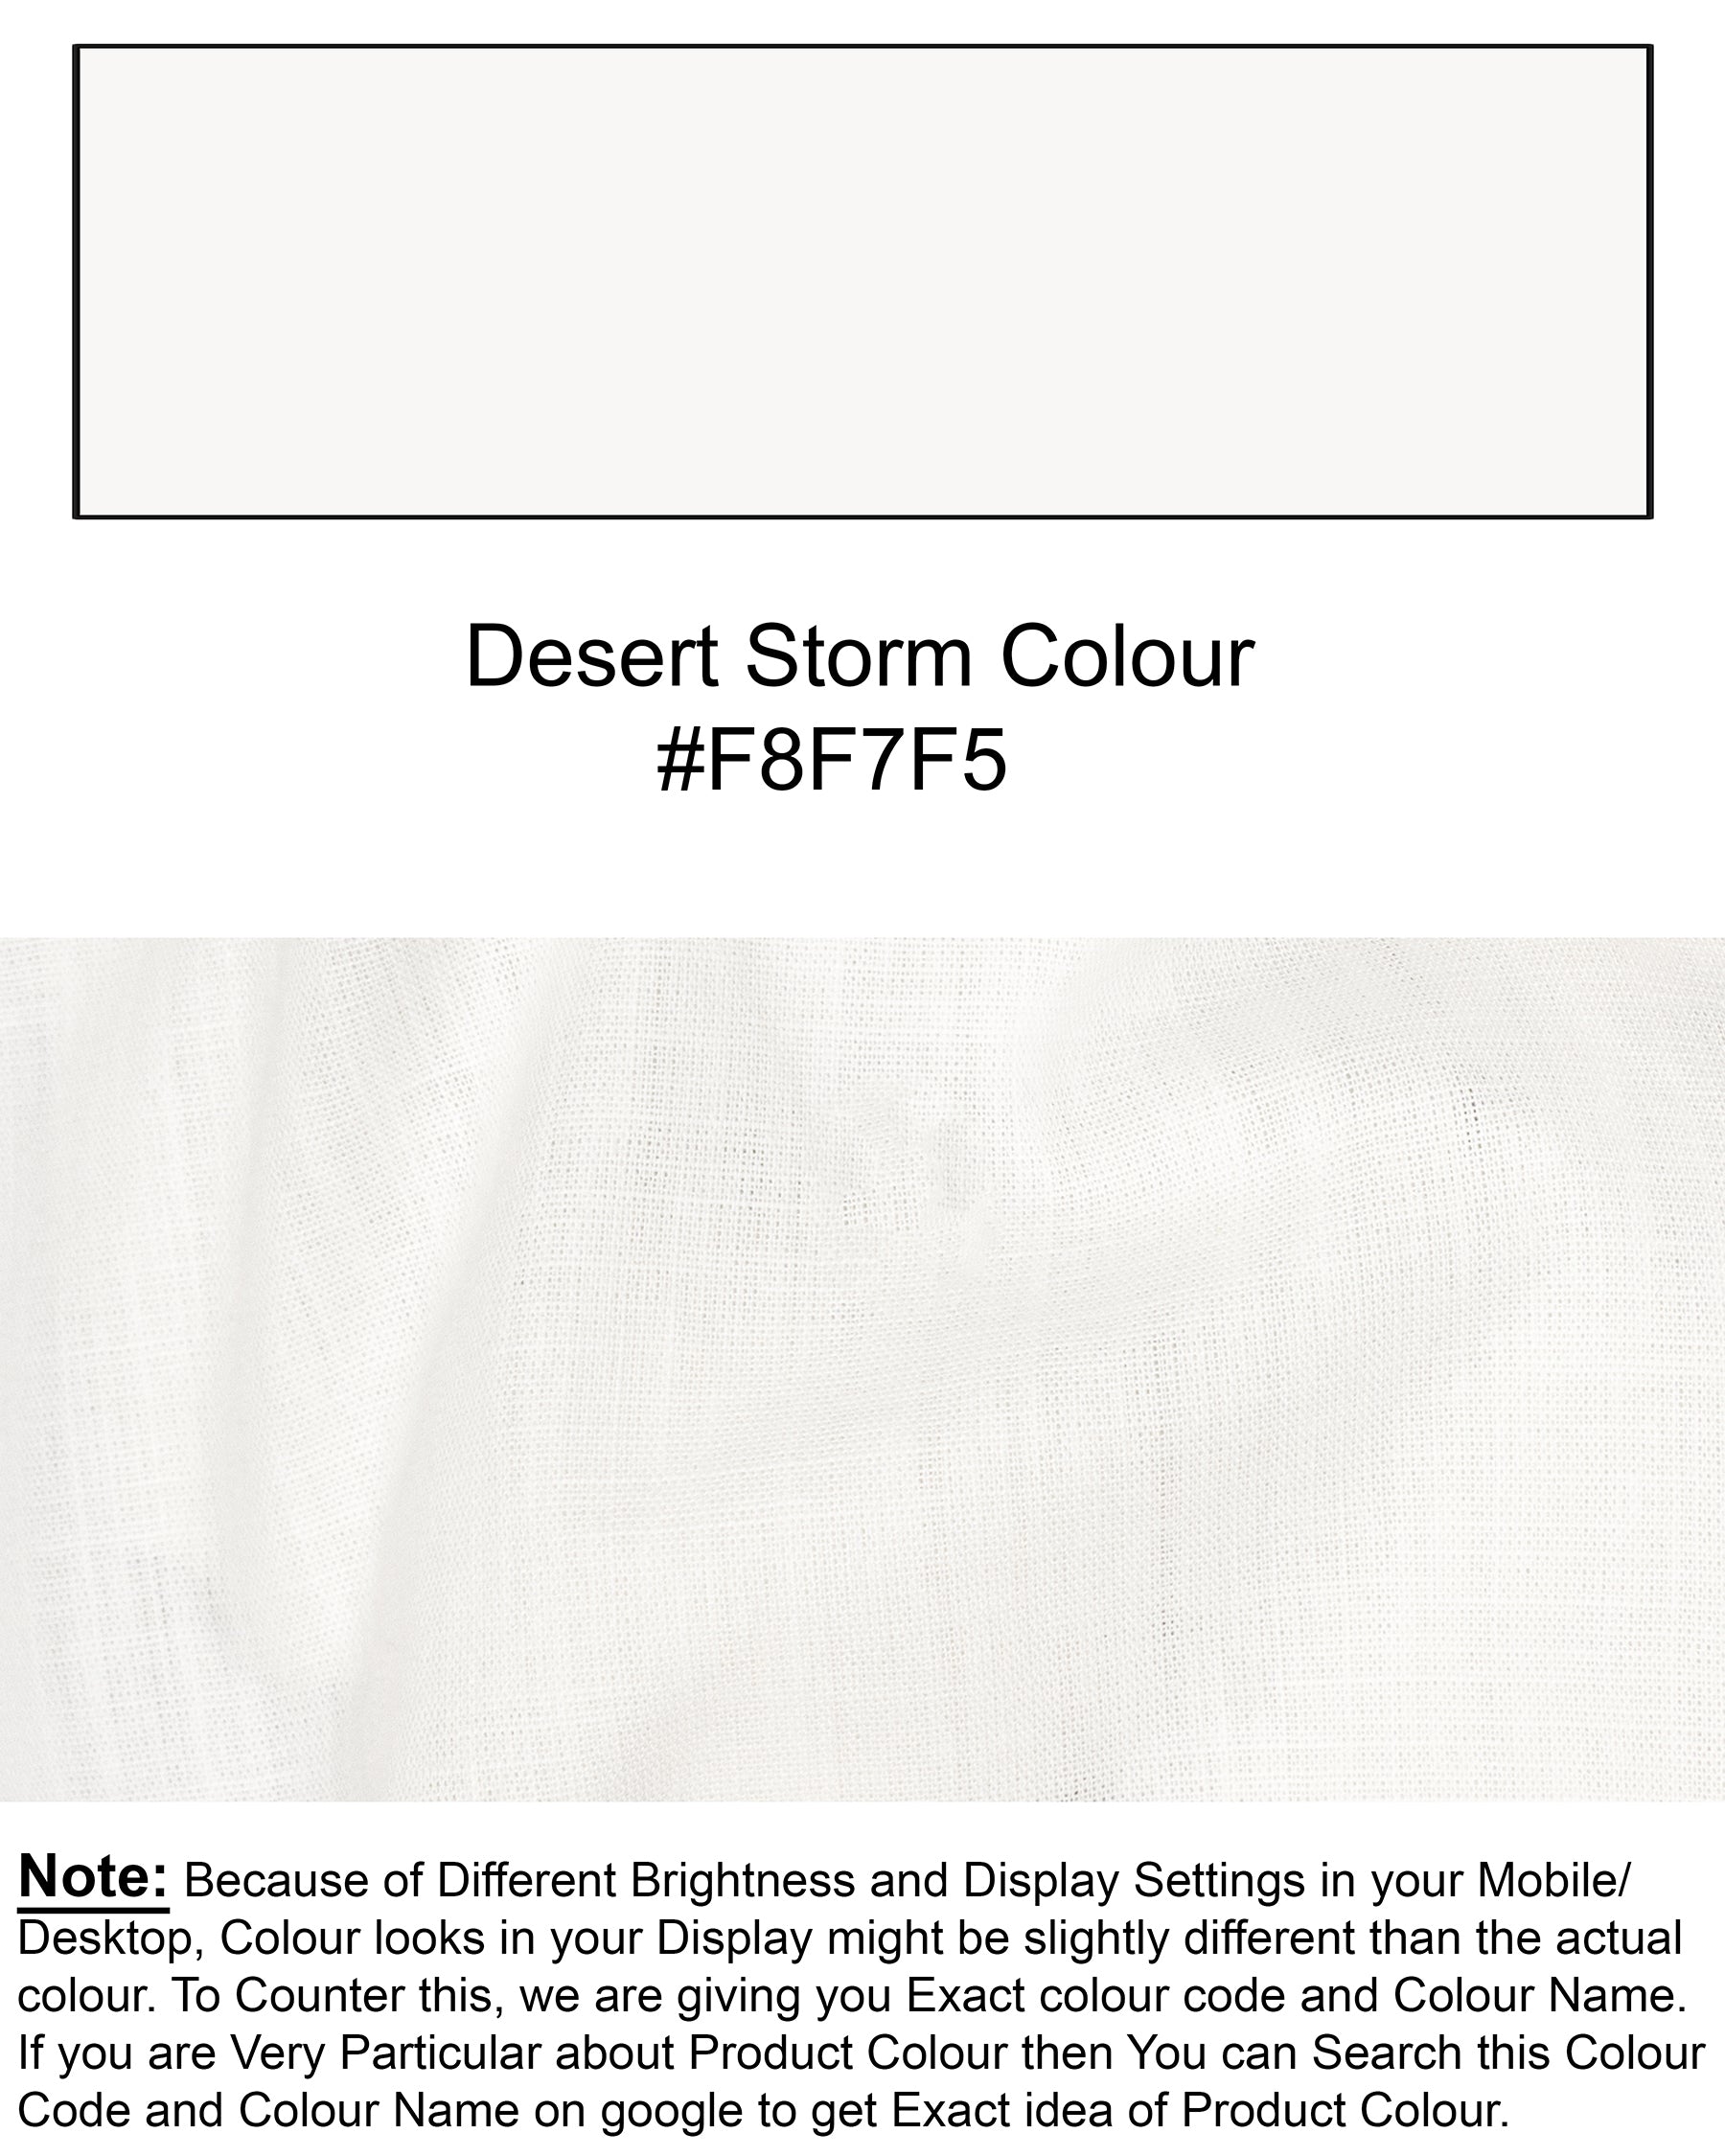 Desert Storm white Luxurious Linen Shirt 6553-BD-BLK-38,6553-BD-BLK-H-38,6553-BD-BLK-39,6553-BD-BLK-H-39,6553-BD-BLK-40,6553-BD-BLK-H-40,6553-BD-BLK-42,6553-BD-BLK-H-42,6553-BD-BLK-44,6553-BD-BLK-H-44,6553-BD-BLK-46,6553-BD-BLK-H-46,6553-BD-BLK-48,6553-BD-BLK-H-48,6553-BD-BLK-50,6553-BD-BLK-H-50,6553-BD-BLK-52,6553-BD-BLK-H-52